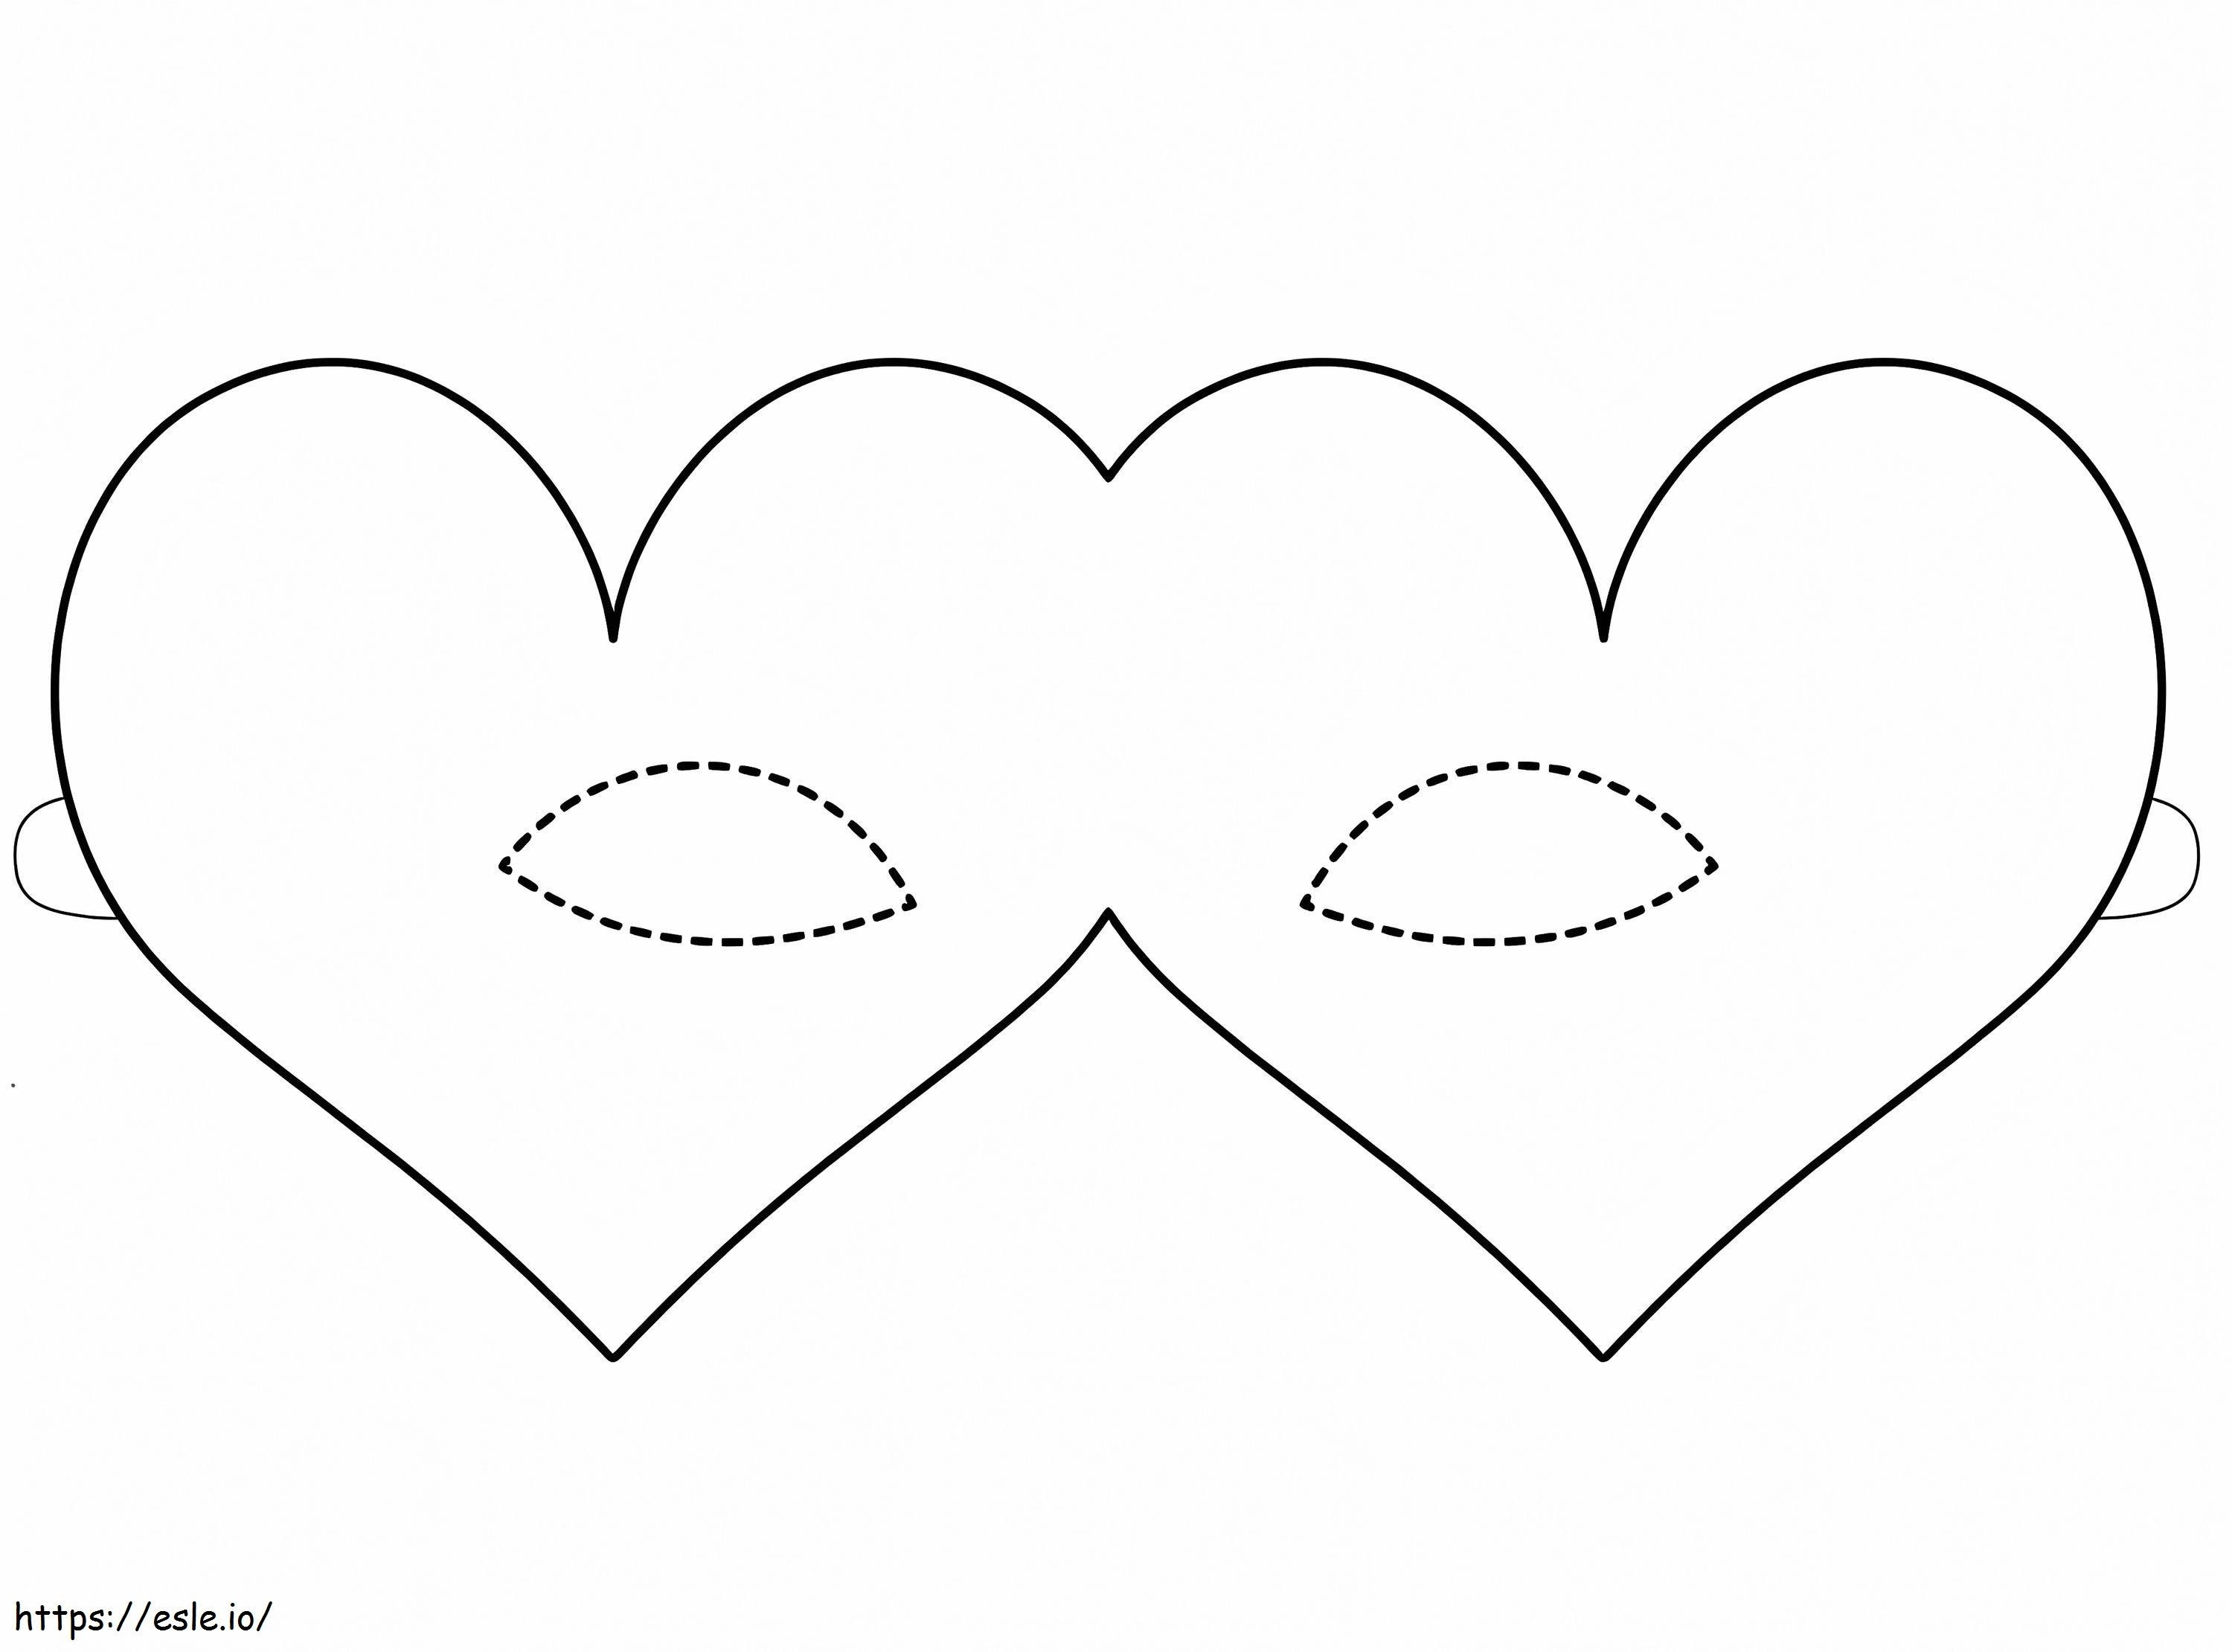 Zwei-Herzen-Maske-Karneval ausmalbilder